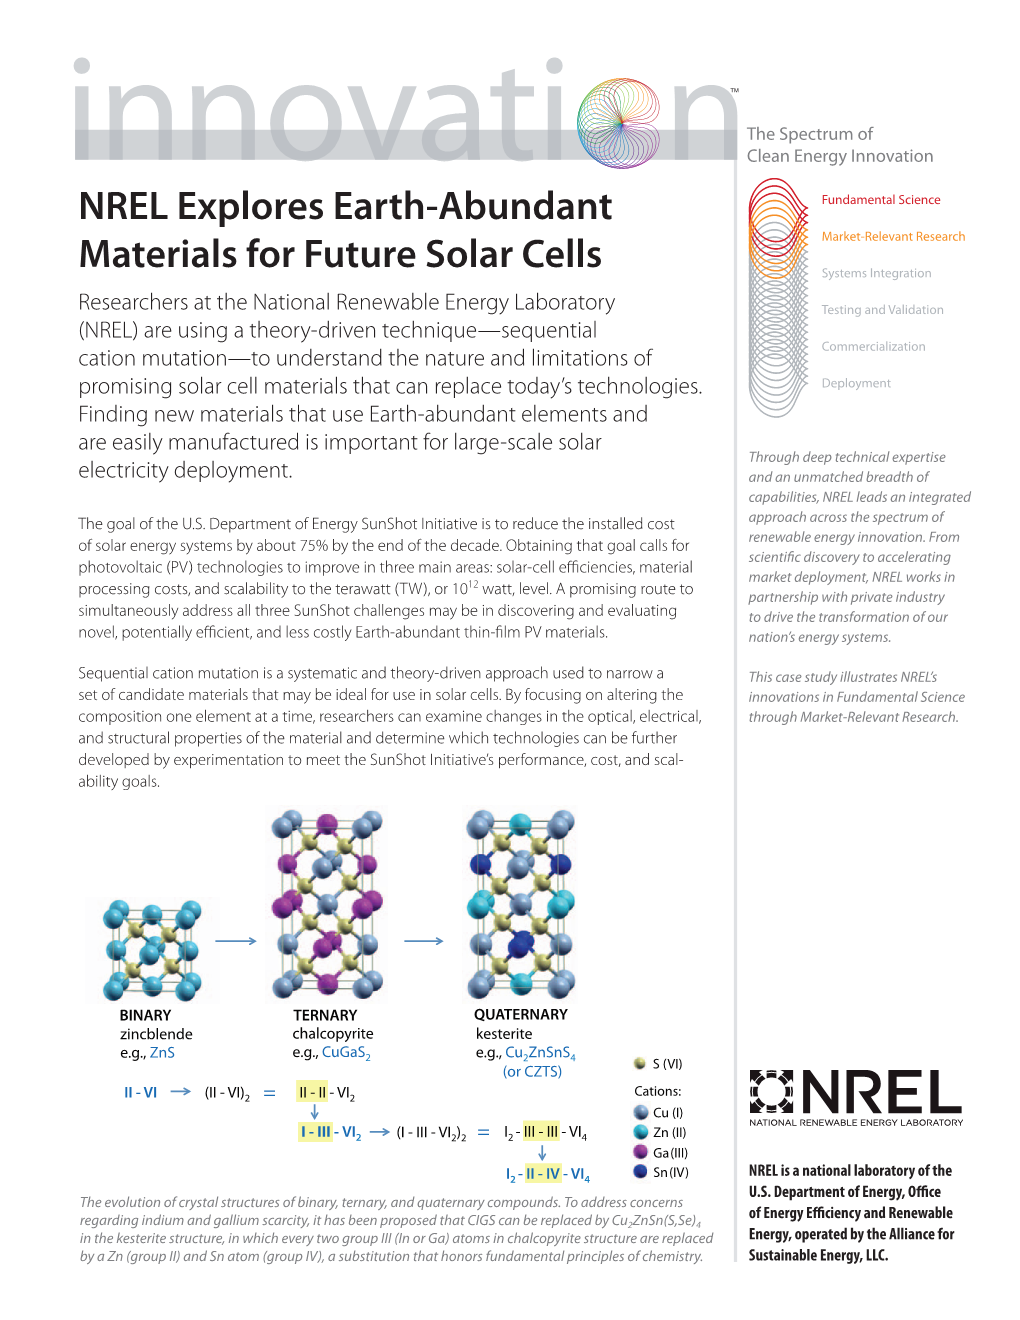 NREL Explores Earth-Abundant Materials for Future Solar Cells